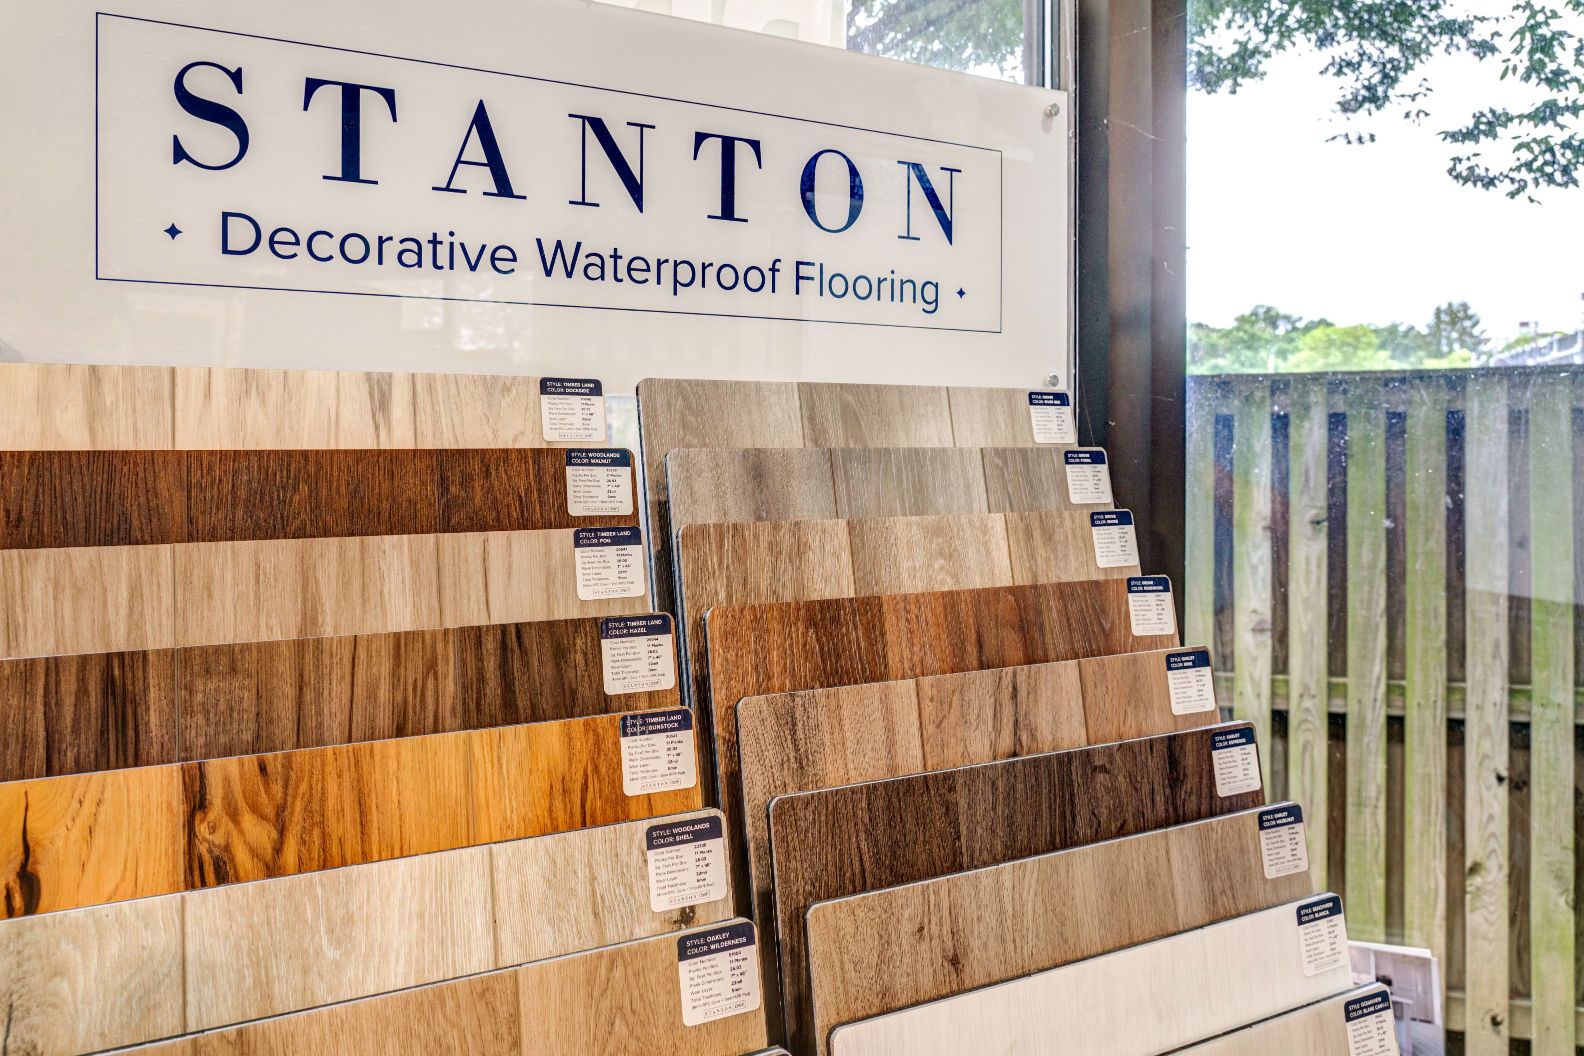 Stanton Decorative Waterproof Flooring Display with wood floor samples